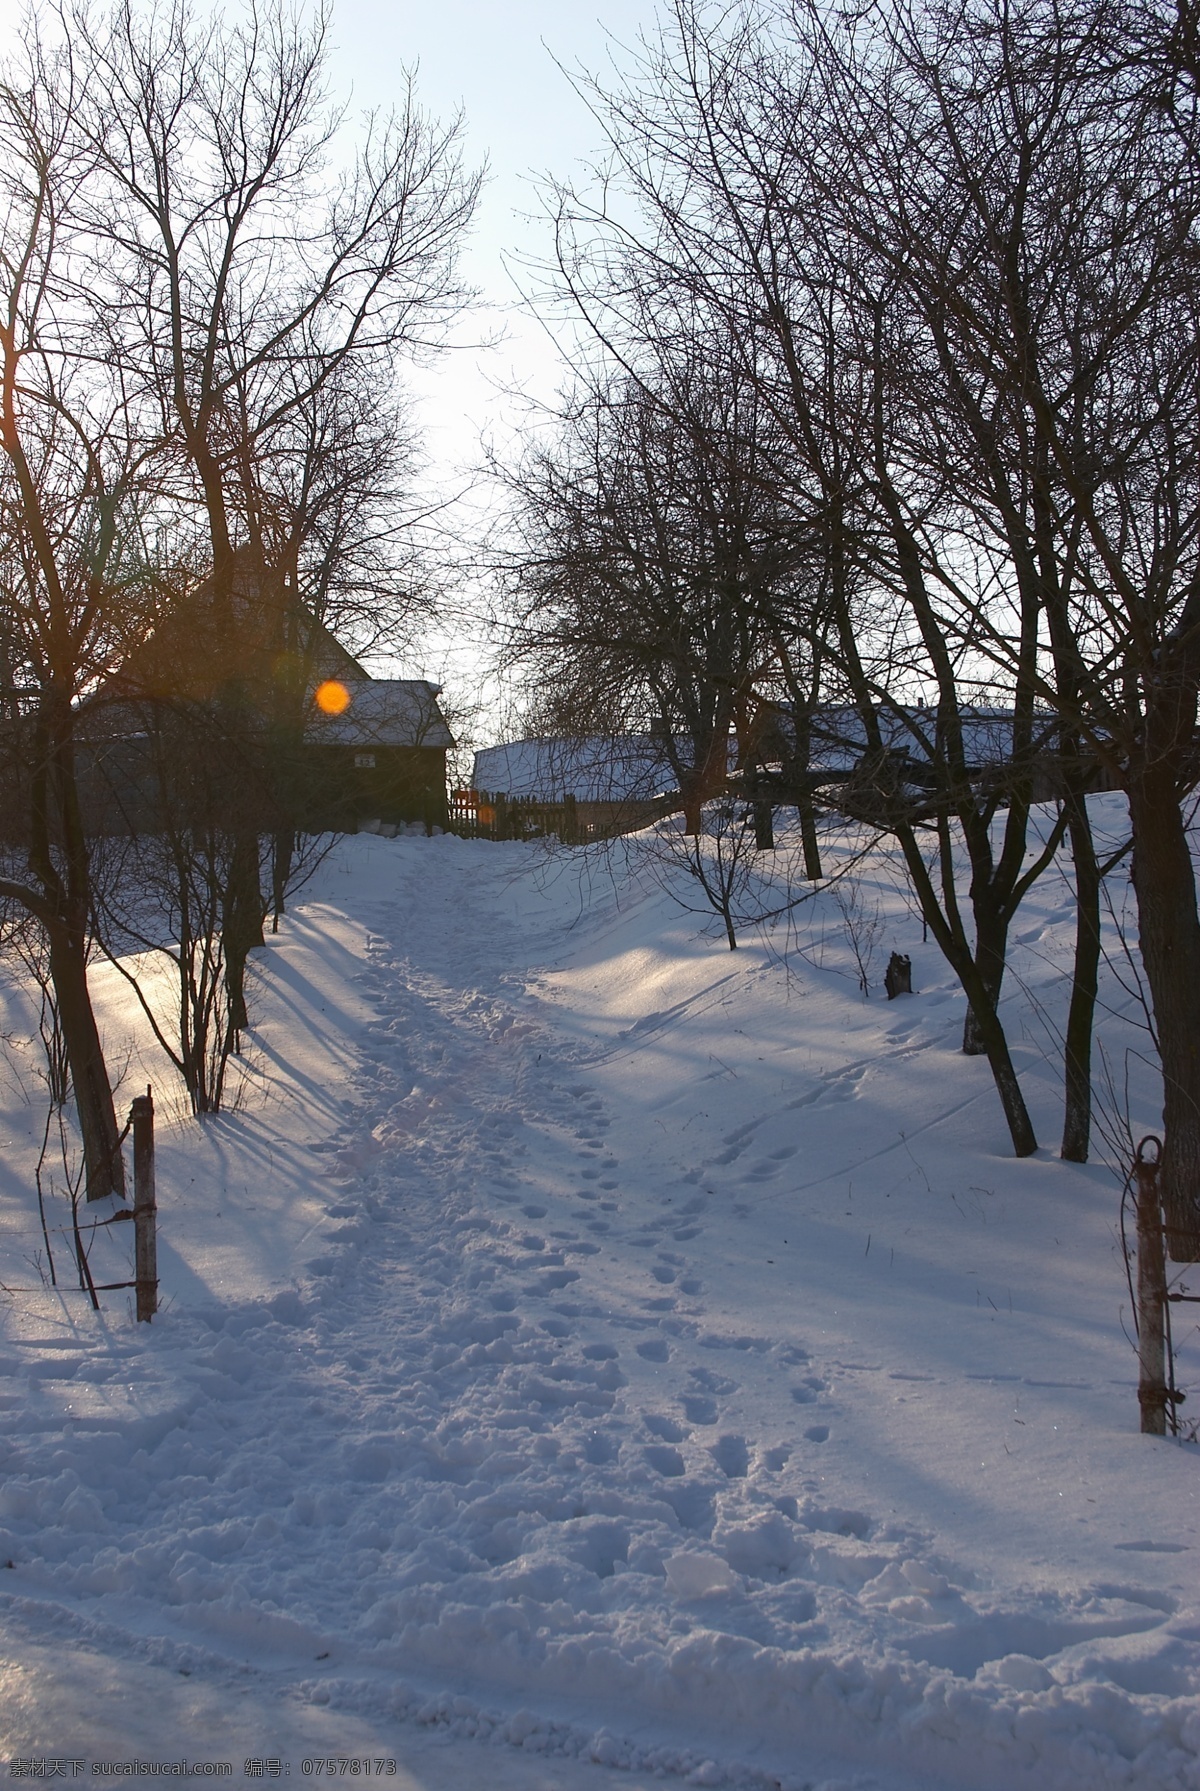 树林里的白雪 冬天雪景 冬季 美丽风景 美丽雪景 白雪 积雪 风景摄影 树木 树林 雪地 脚印 房屋 自然风景 自然景观 黑色